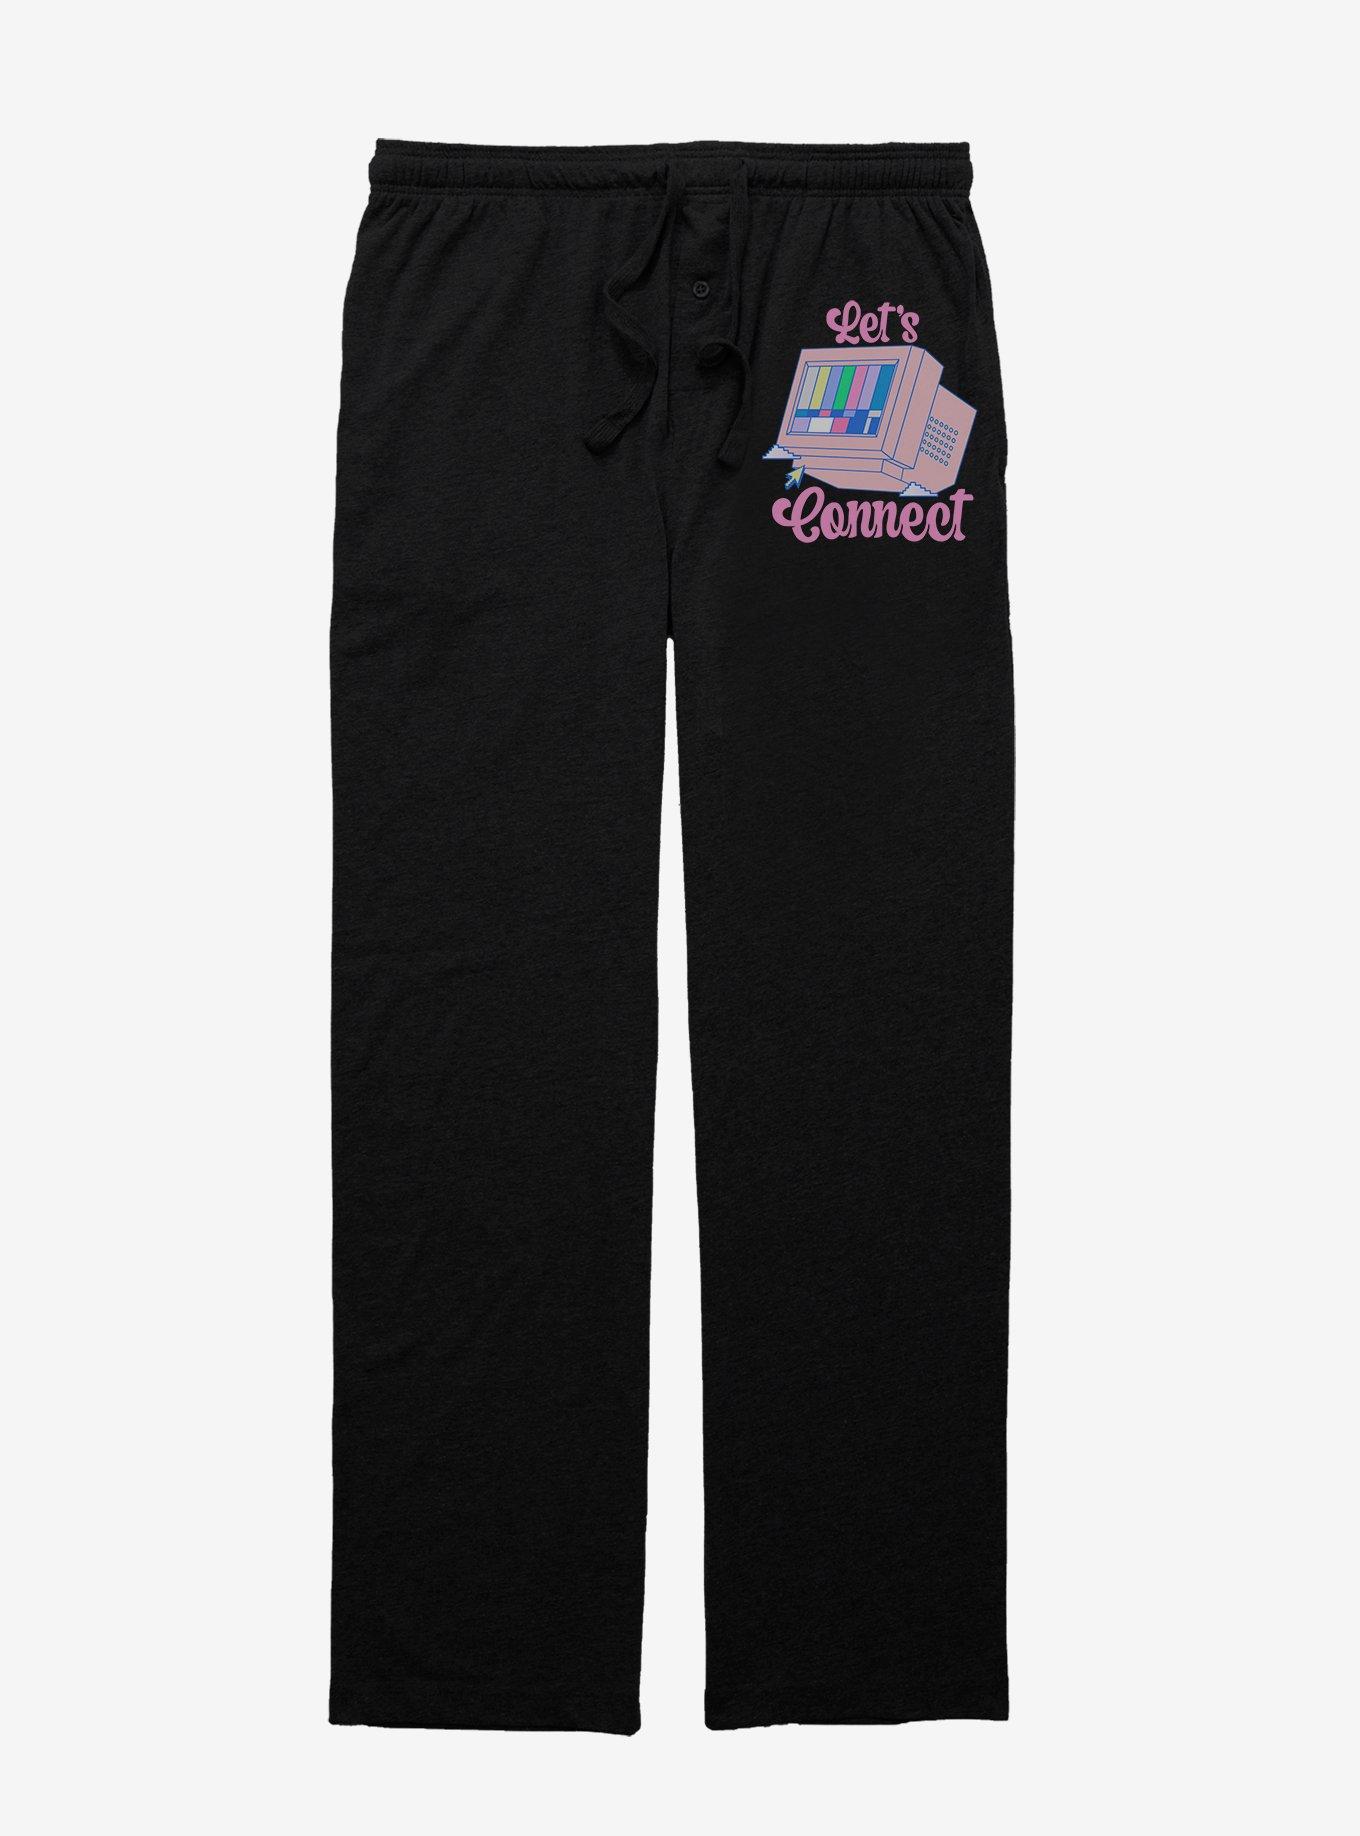 Let's Connect Pajama Pants, BLACK, hi-res